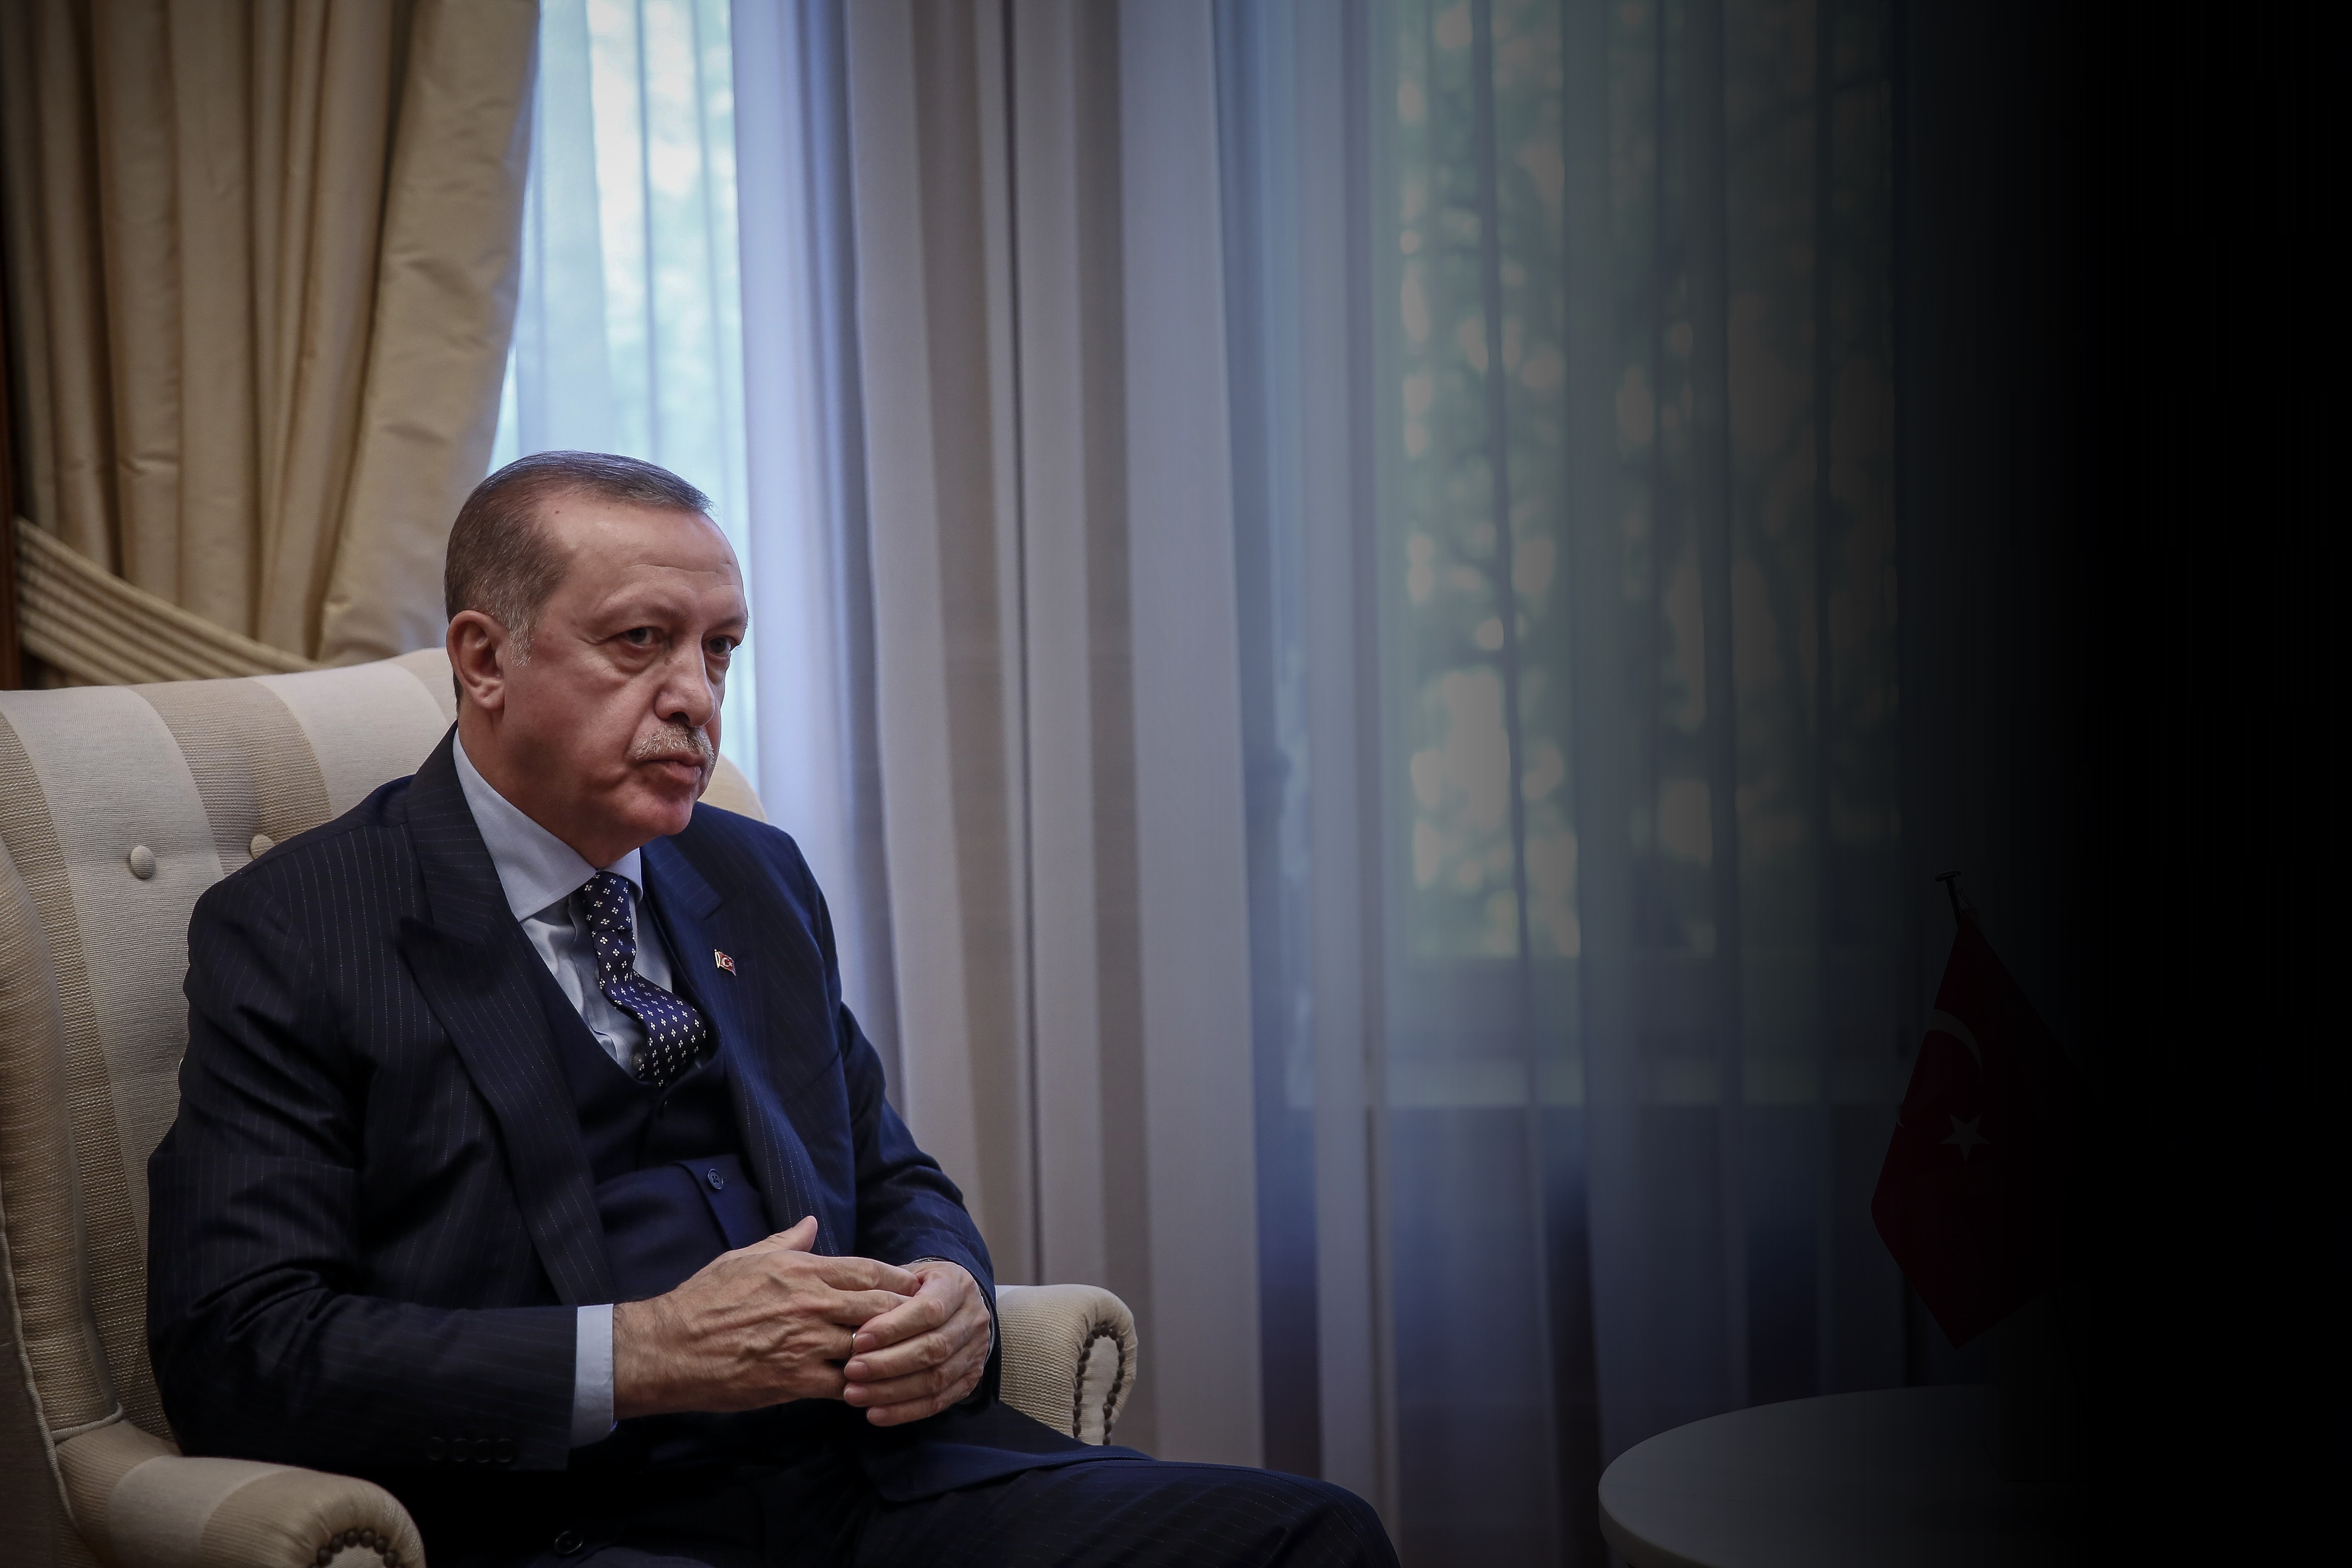 Ερντογάν νέες δηλώσεις: “Ελπίζω να μην πληρώσουν το ίδιο τίμημα”